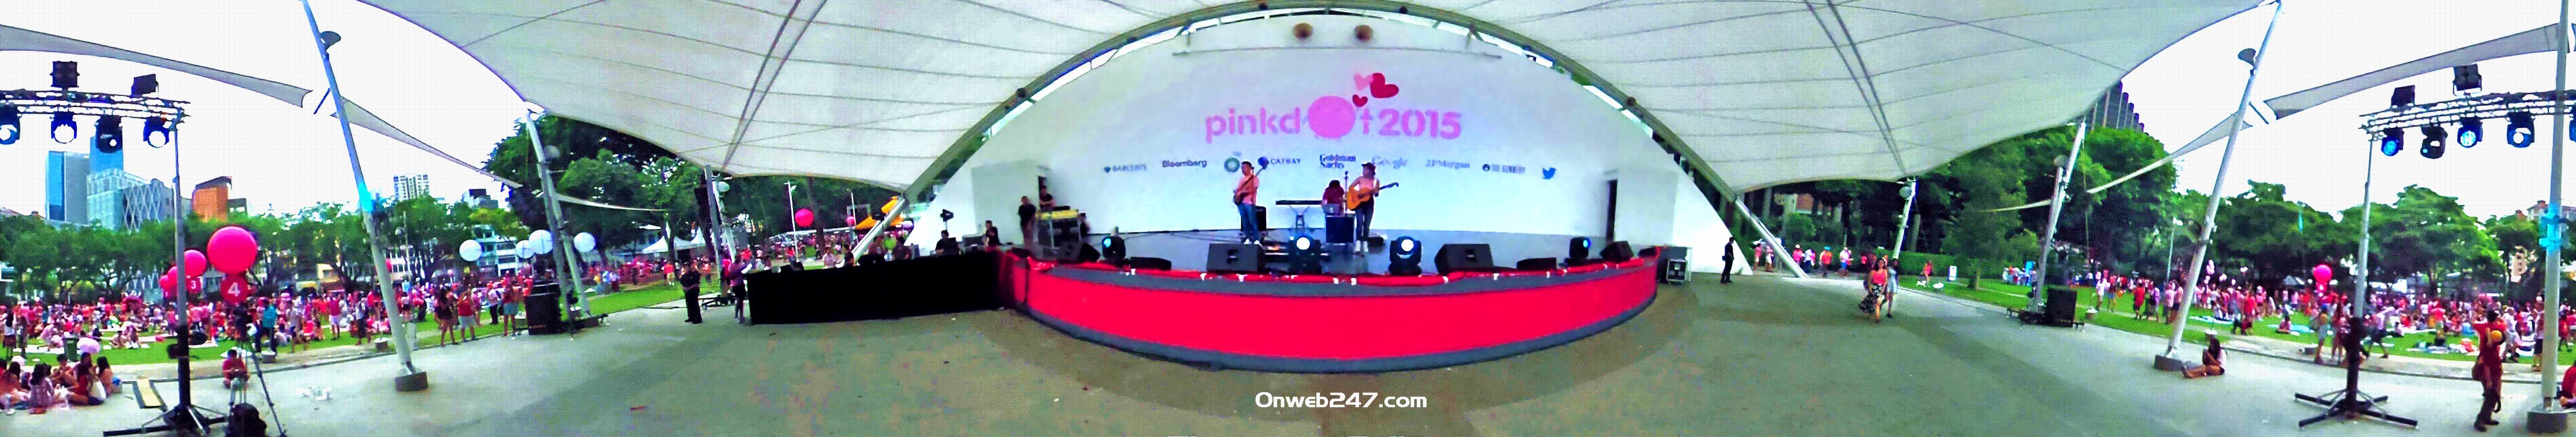 PINKDOT EVENT AT HONG LIM PARK (2015)